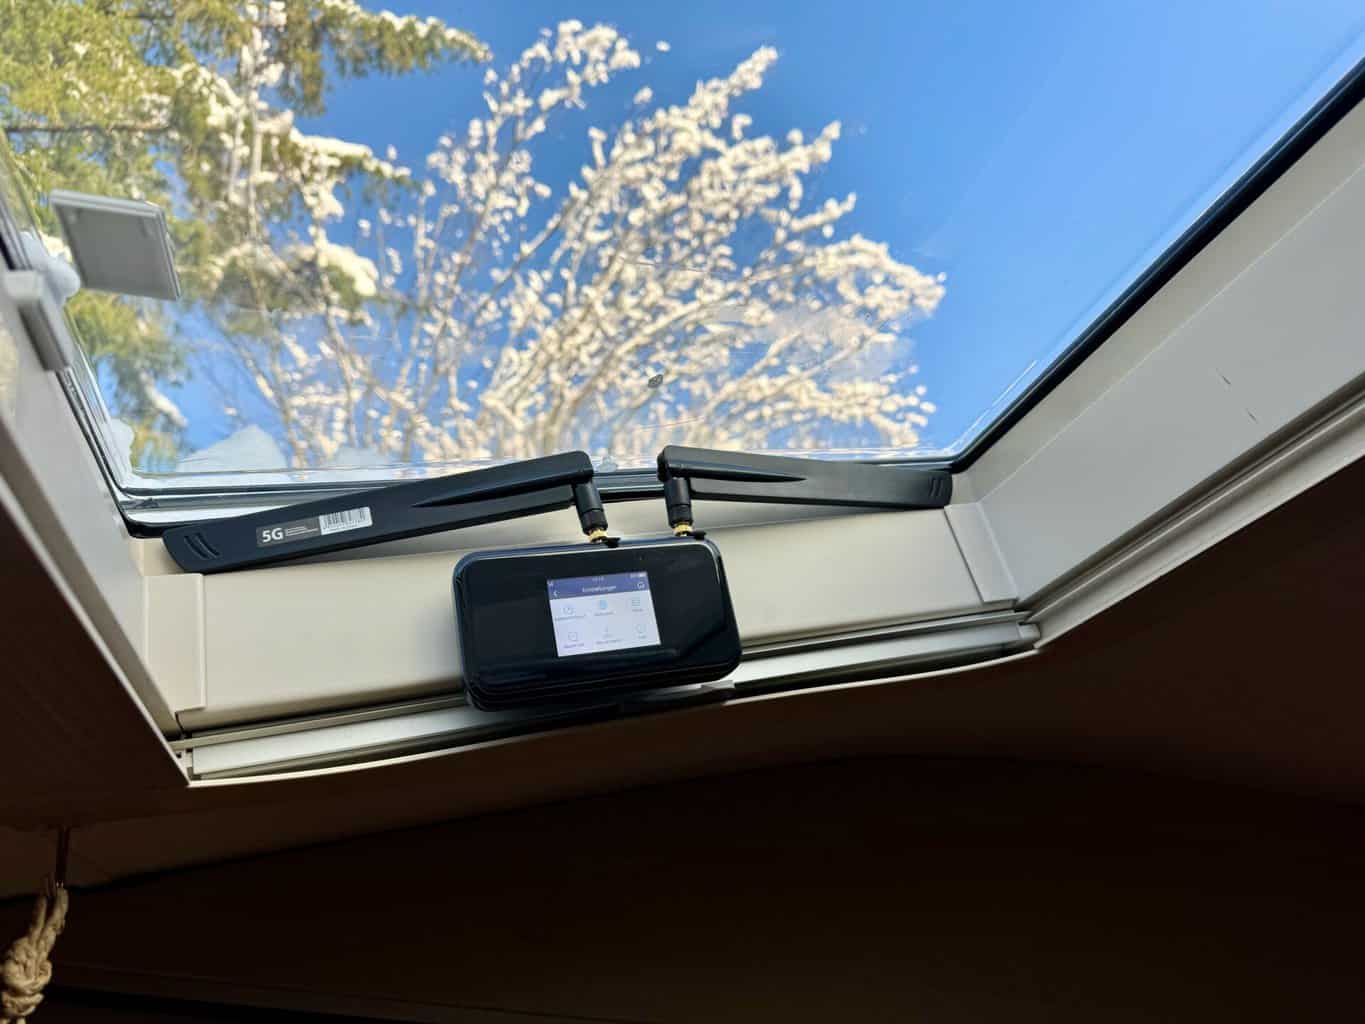 4 Klebe-, Ansteck-, Saugnapf- und Magnet-Antennen im Test und Vergleich, Ansteck Antenne und Internet Router mit ZTE MU5001 selbstklebende Wandhaken am Wohnmobil Dachfenster